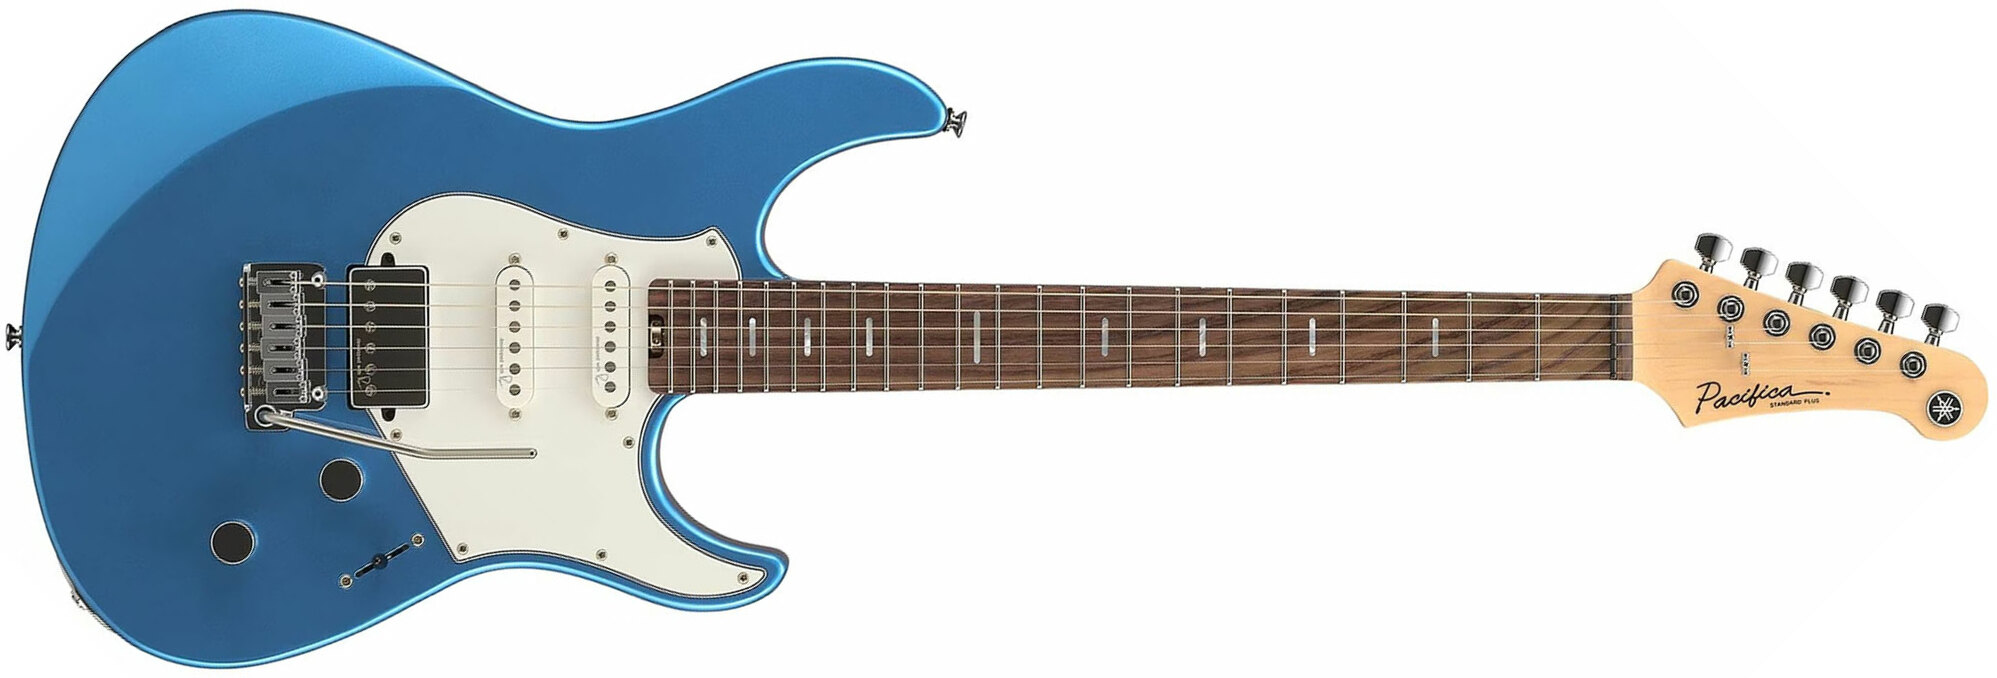 Yamaha Pacifica Standard Plus Pacs+12 Trem Hss Rw - Sparkle Blue - Guitarra eléctrica con forma de str. - Main picture